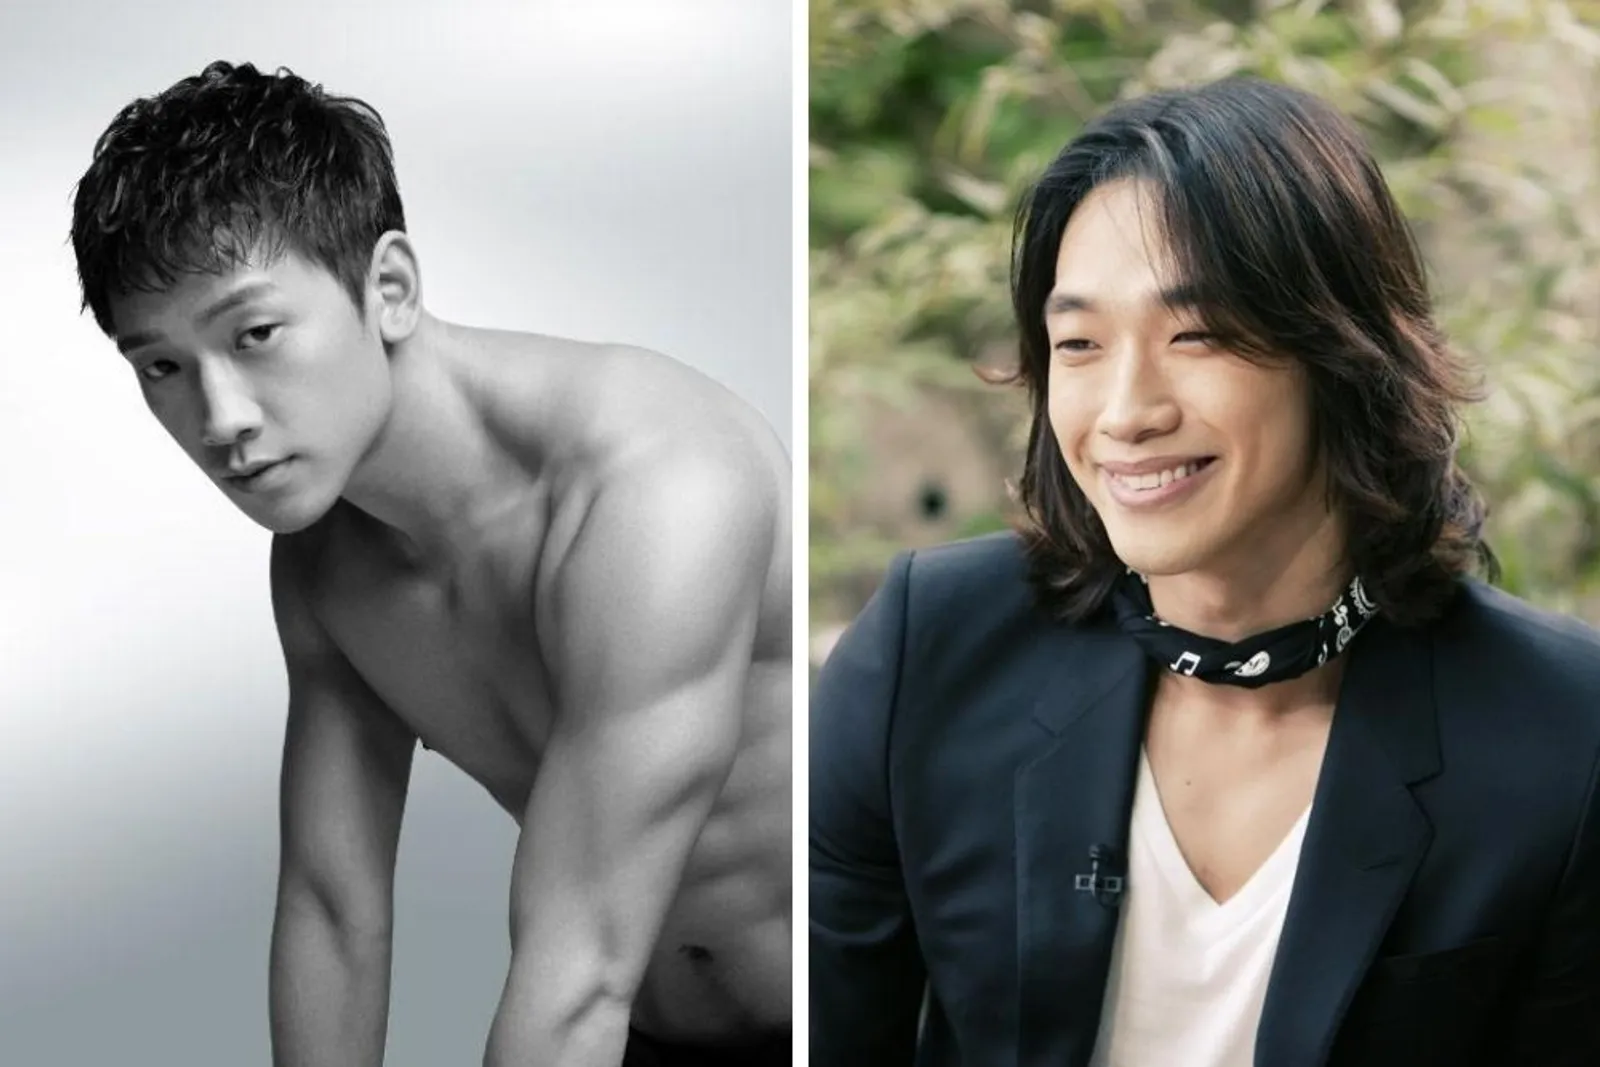 Gaya Aktor Korea dengan Rambut Pendek vs Gondrong, Bikin Susah Pilih!